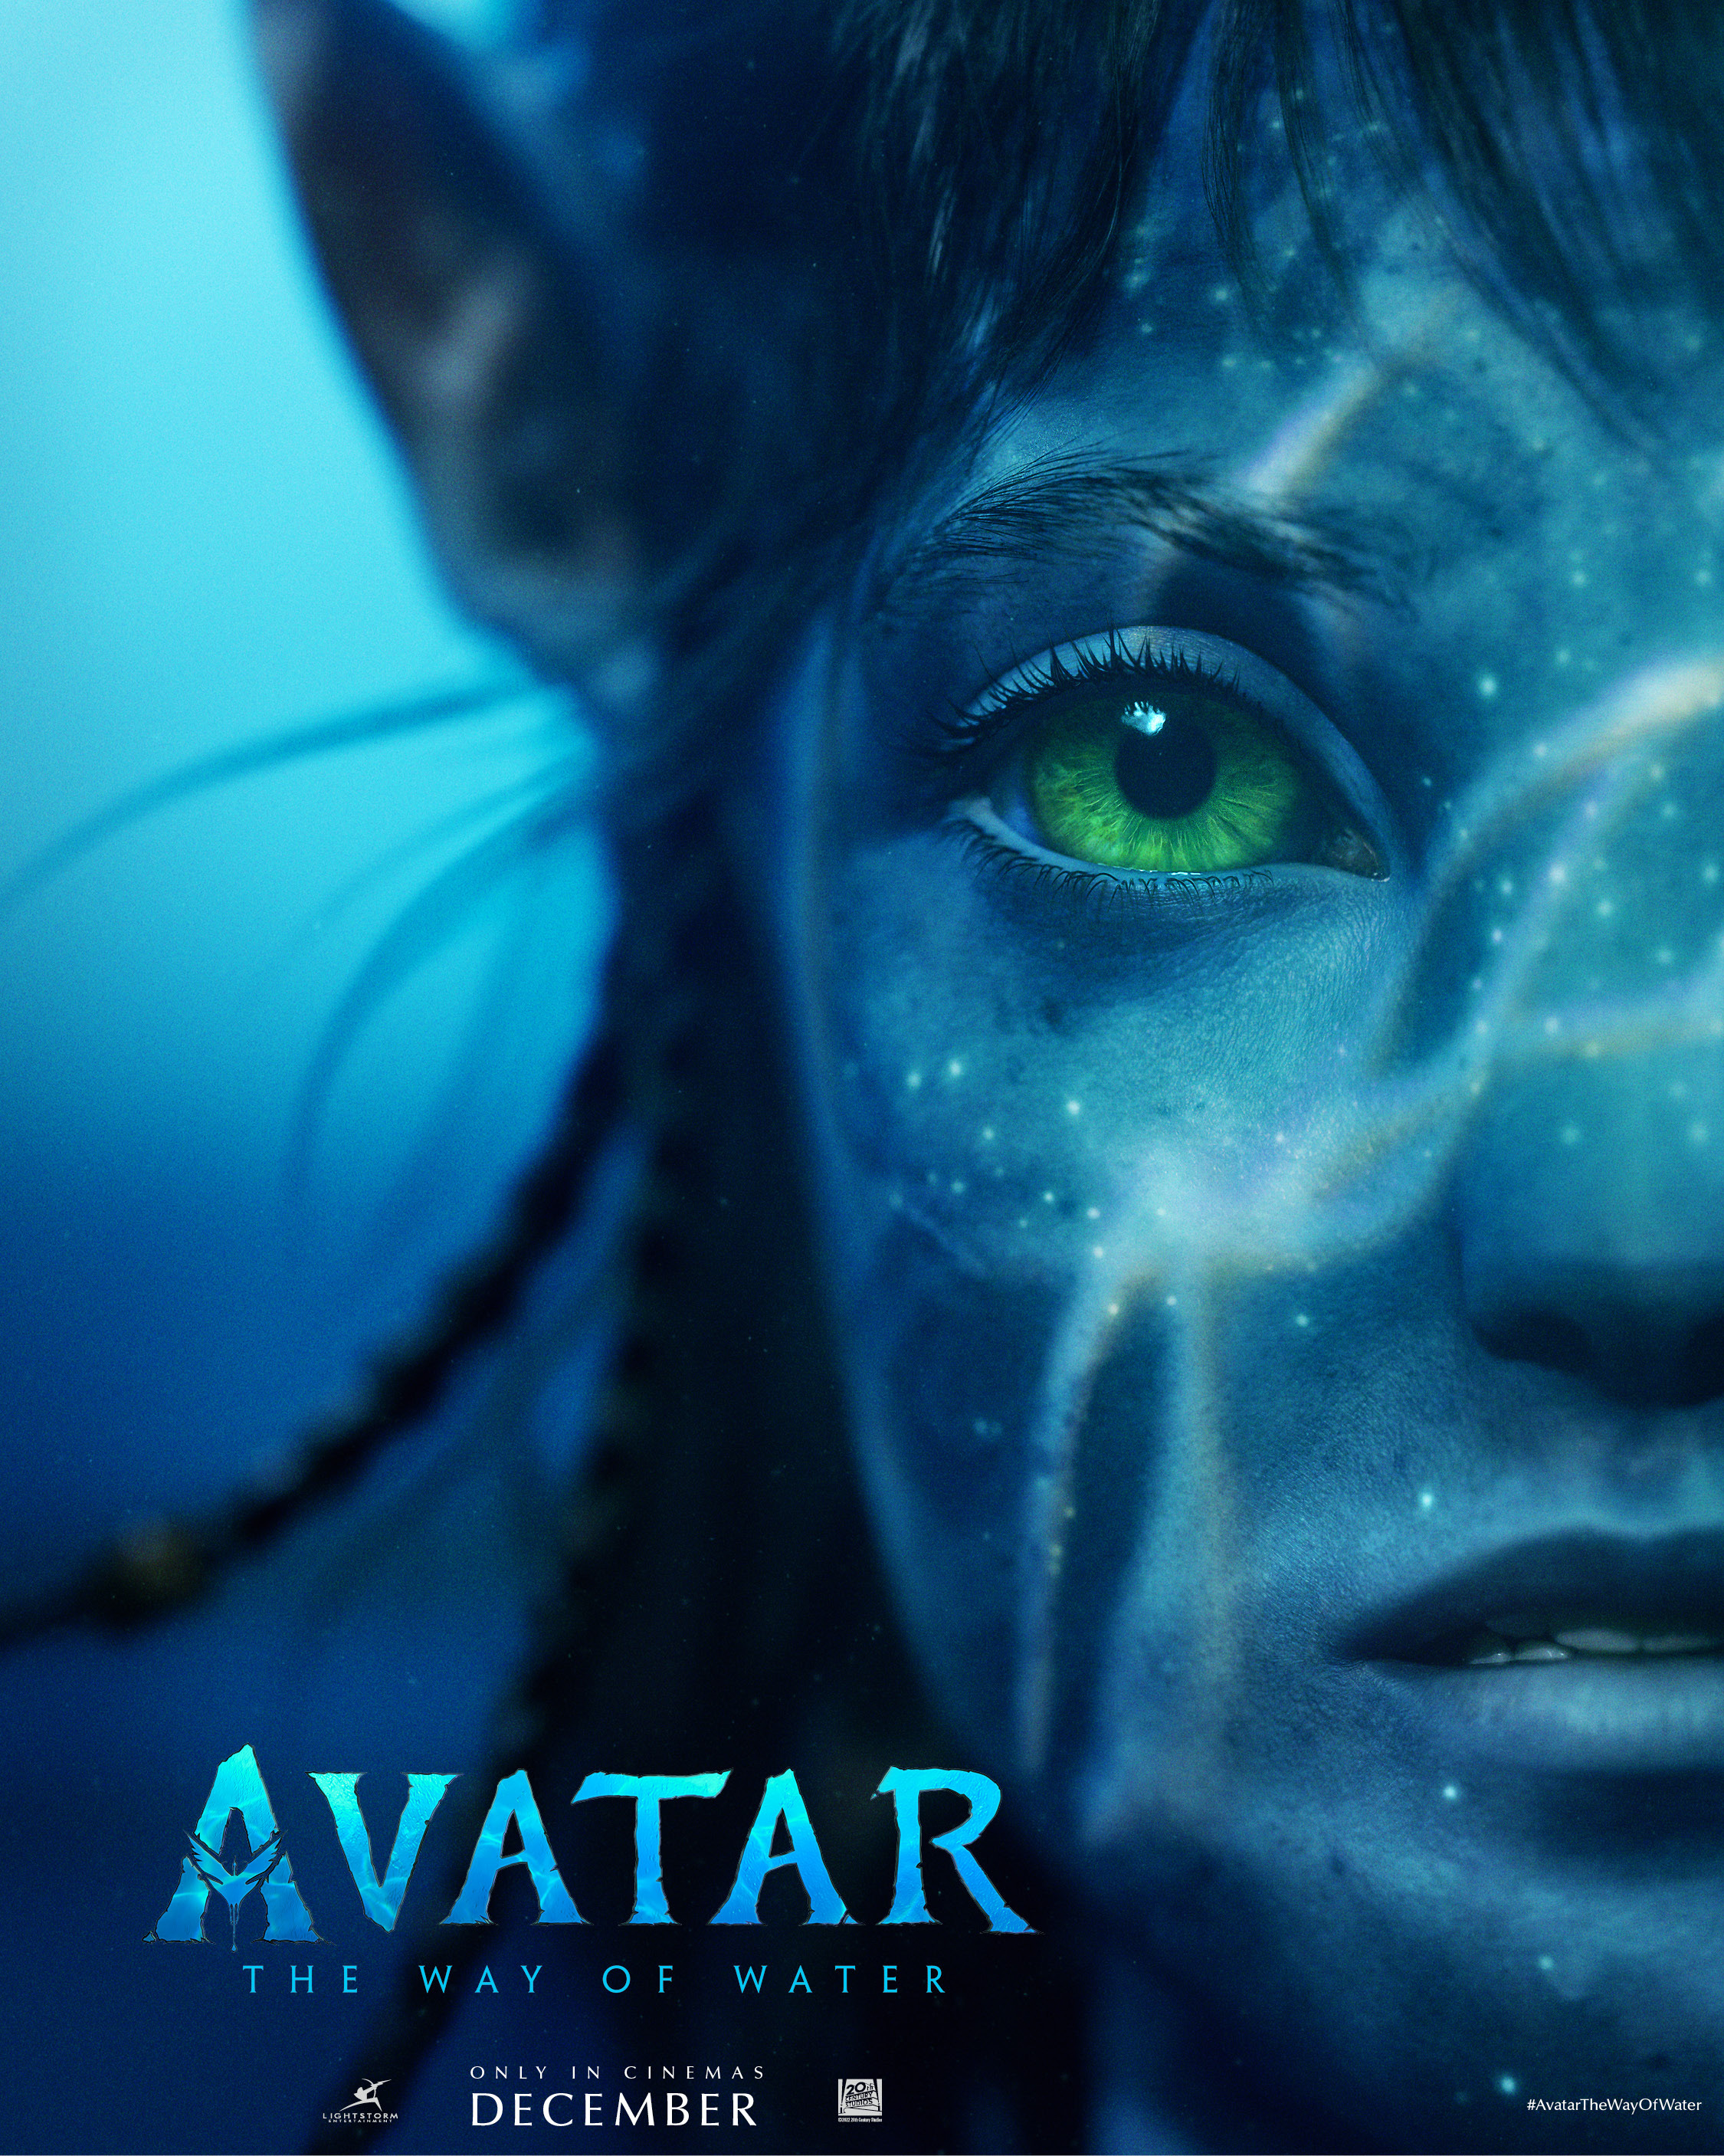 Avatar: The Way of Water - phim bom tấn đang thu hút sự chú ý của đông đảo khán giả yêu thích điện ảnh. Với kế hoạch sản xuất và ra mắt vào năm 2024, chúng ta sẽ được chứng kiến một bản phim đầy cảm xúc và sống động như chính cuộc sống. Nếu bạn là một người yêu thích phim ảnh và muốn tìm kiếm những trải nghiệm thú vị, hãy đến rạp để trải nghiệm cảm giác suy nghĩ, tình cảm và tiếng cười trong tác phẩm này.